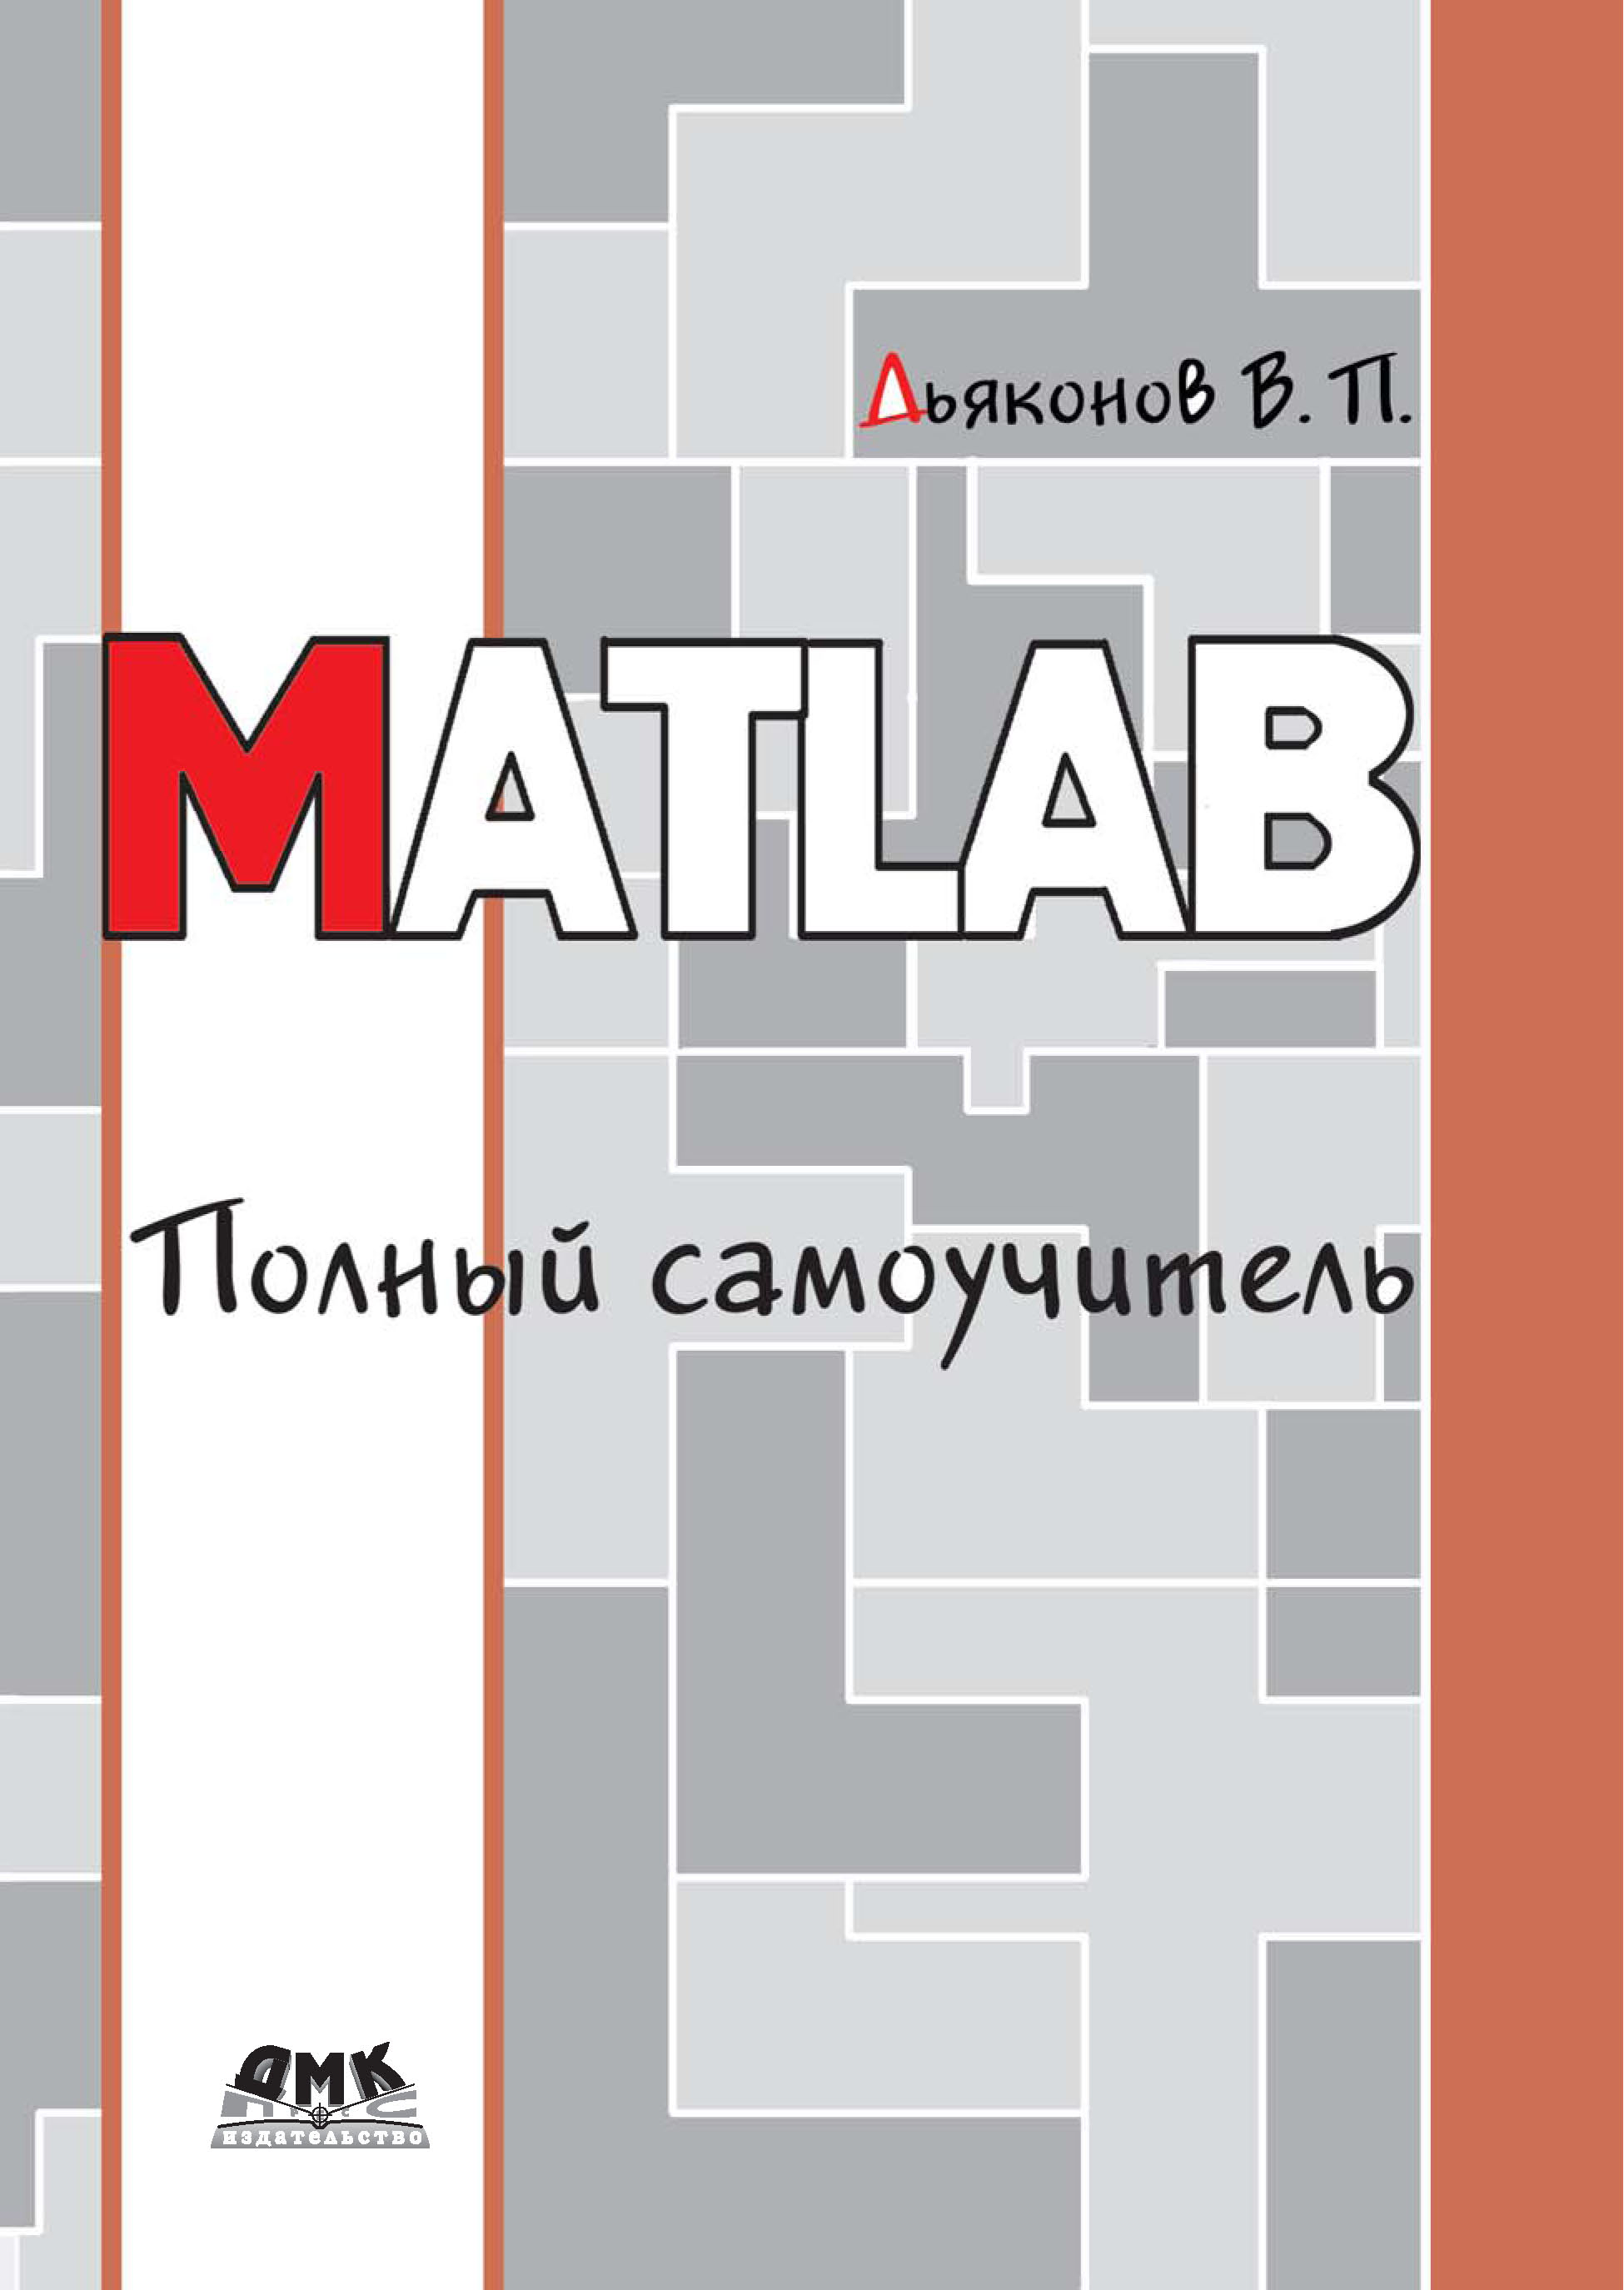 Книга  MATLAB. Полный самоучитель созданная В. П. Дьяконов может относится к жанру математика, программы, техническая литература. Стоимость электронной книги MATLAB. Полный самоучитель с идентификатором 6283719 составляет 439.00 руб.